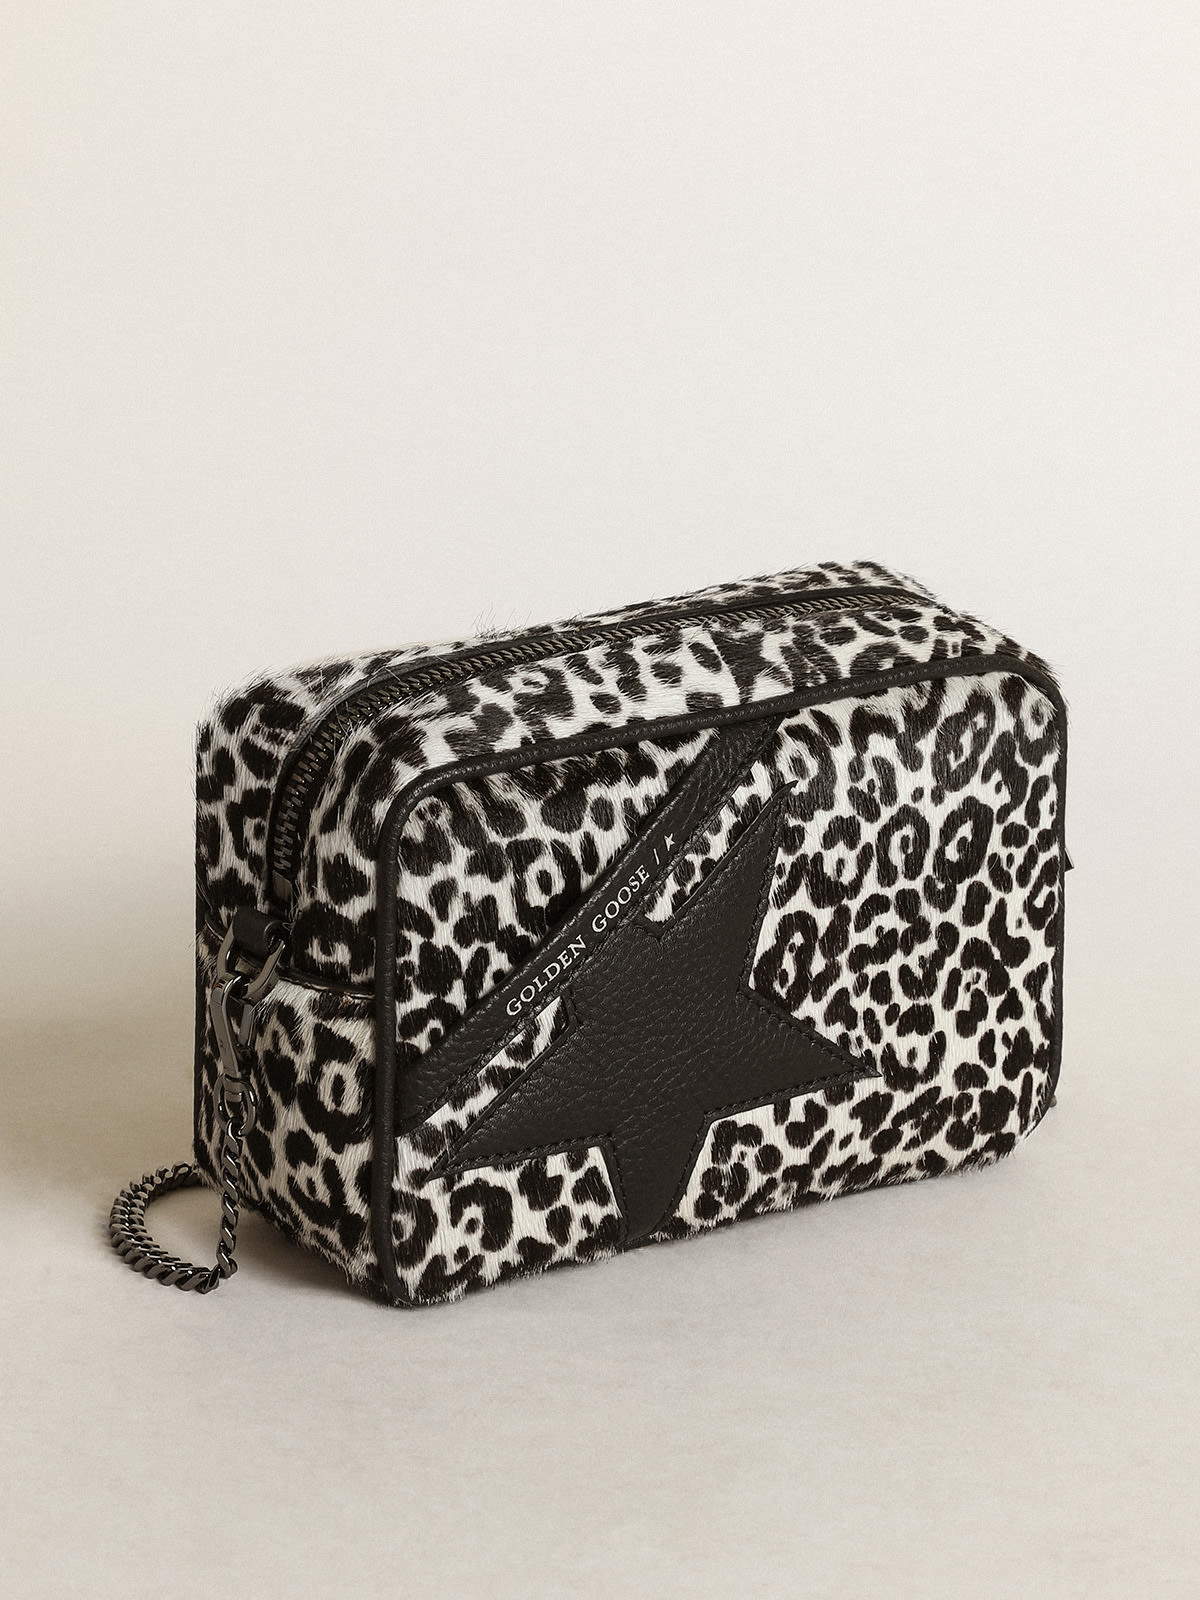 Golden Goose - Women's Mini Star Bag in black and white leopard print pony skin in 